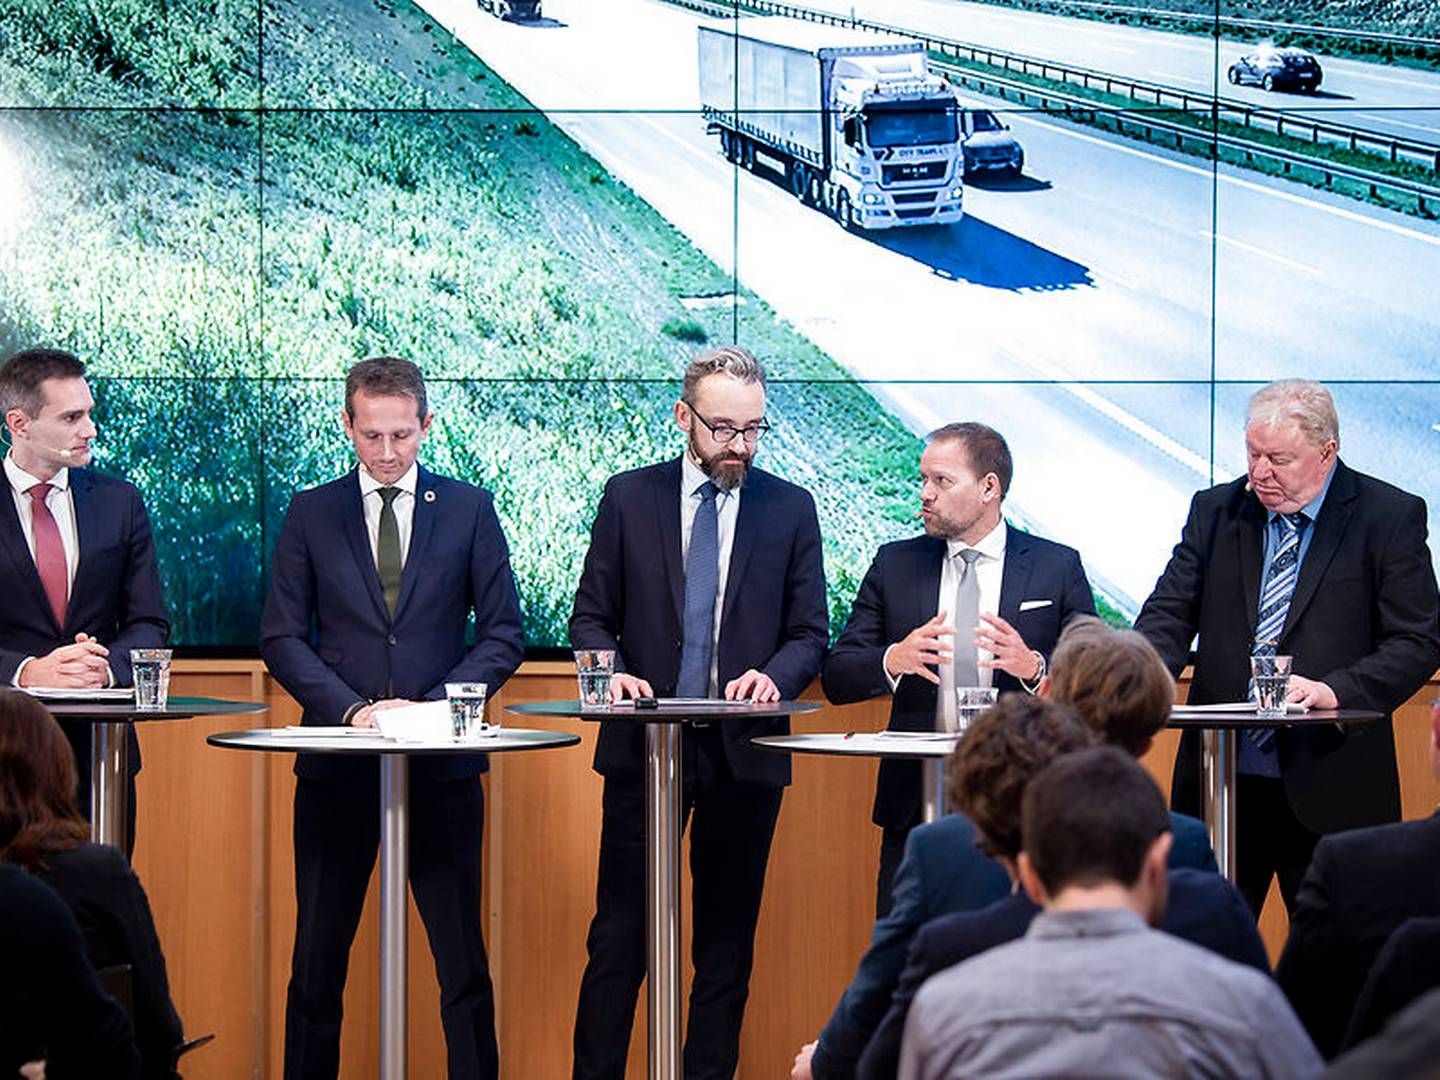 Regeringen og DF har fremlagt en investeringsplan for den danske infrastruktur frem mod 2030. | Foto: Liselotte Sabroe/Ritzau Scanpix